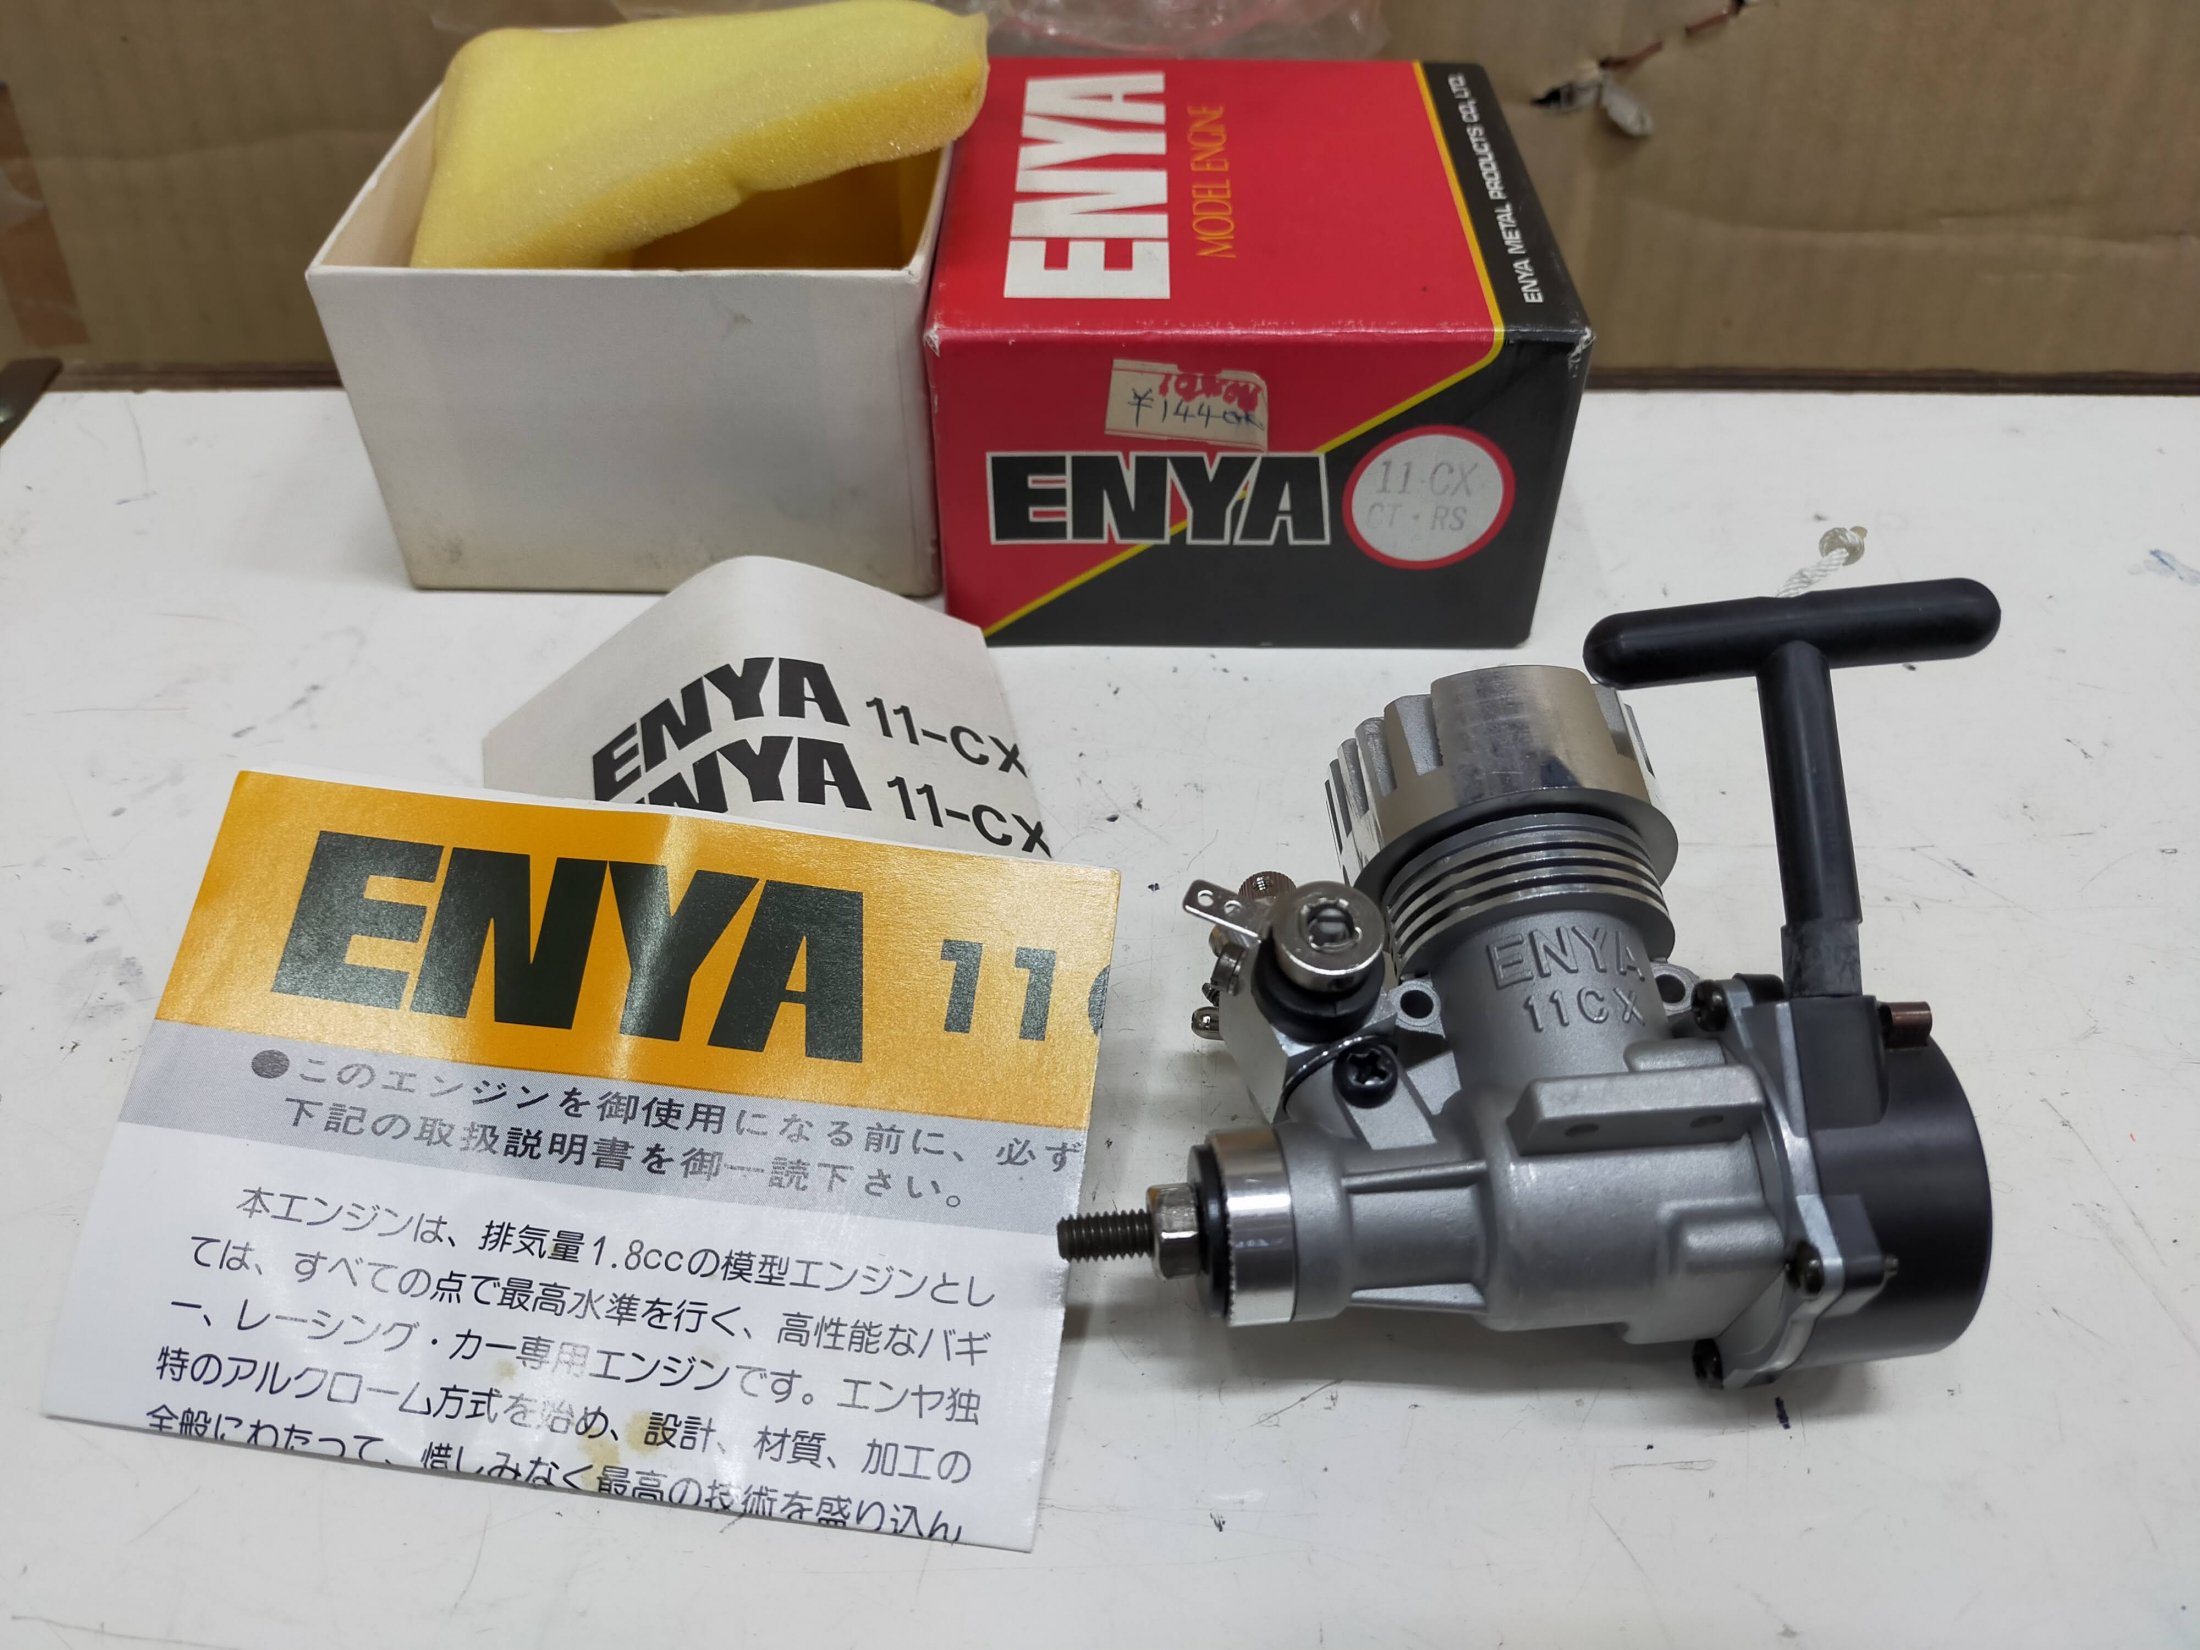 ENYA 06-Ⅱ エンジン RC-